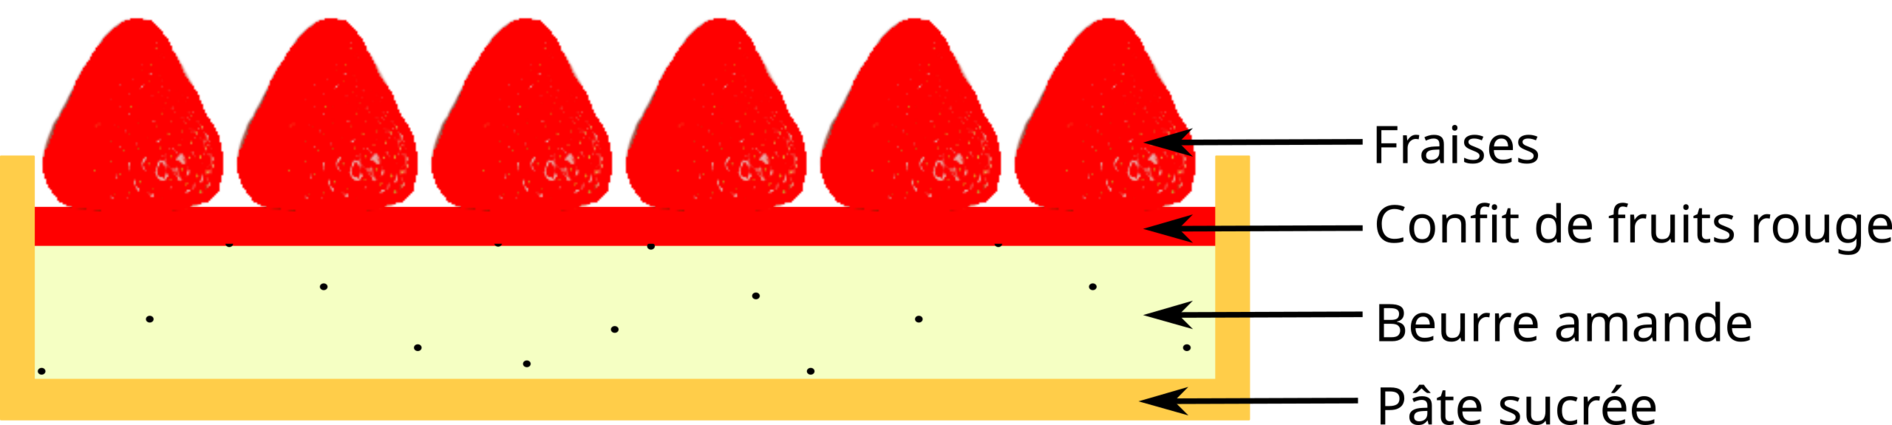 Diagramme de la tarte aux fraises